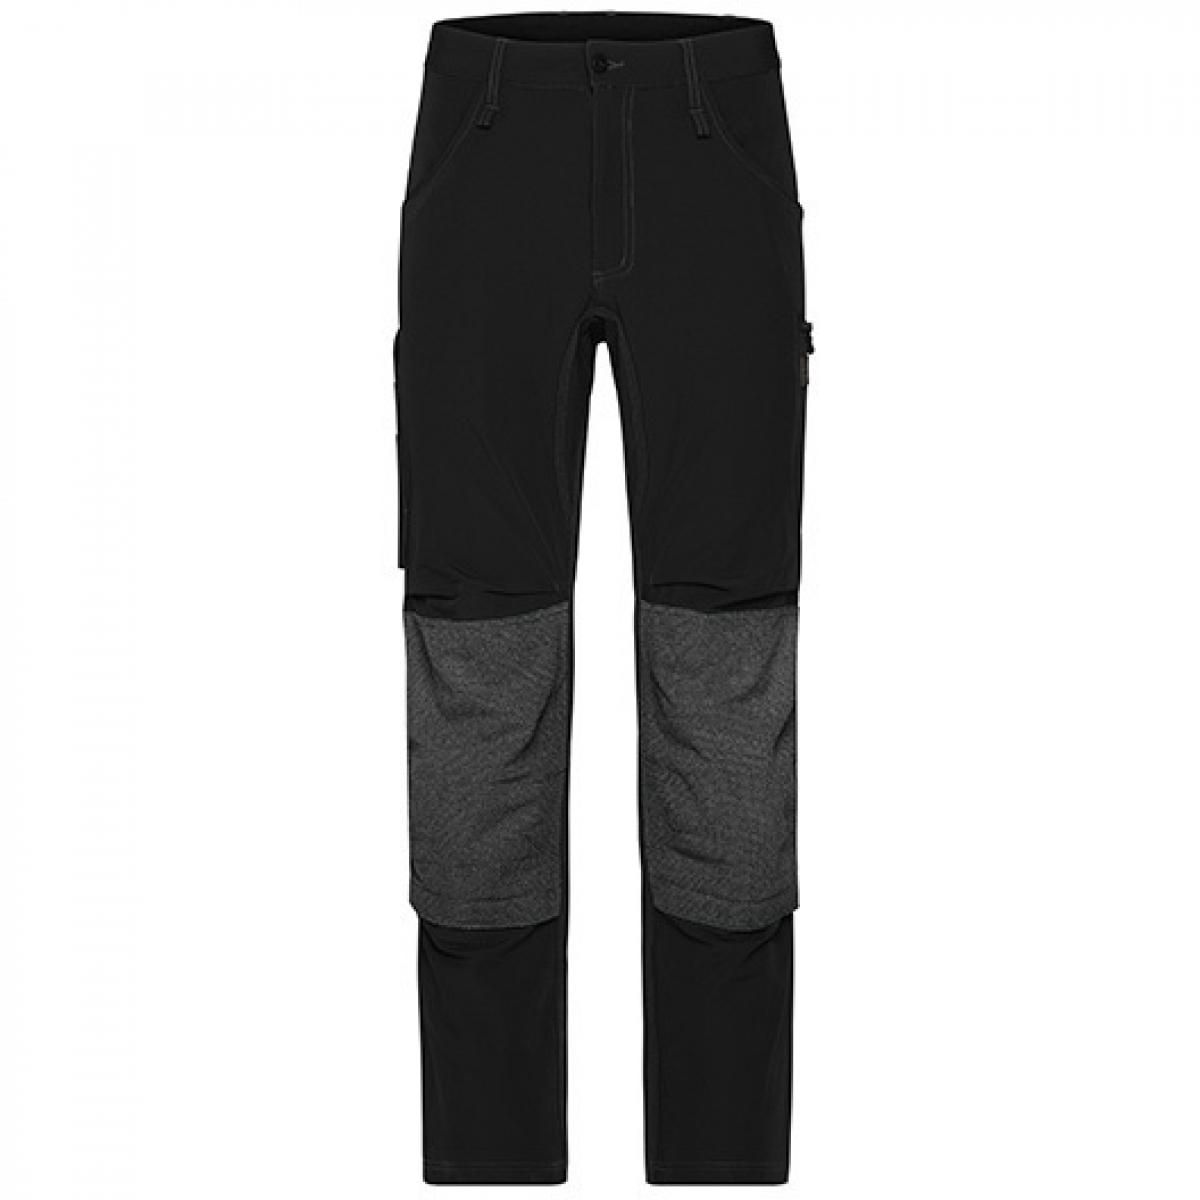 Hersteller: James+Nicholson Herstellernummer: JN1813 Artikelbezeichnung: Workwear Pants 4-Way Stretch Slim Line / Arbeitshose Farbe: Black